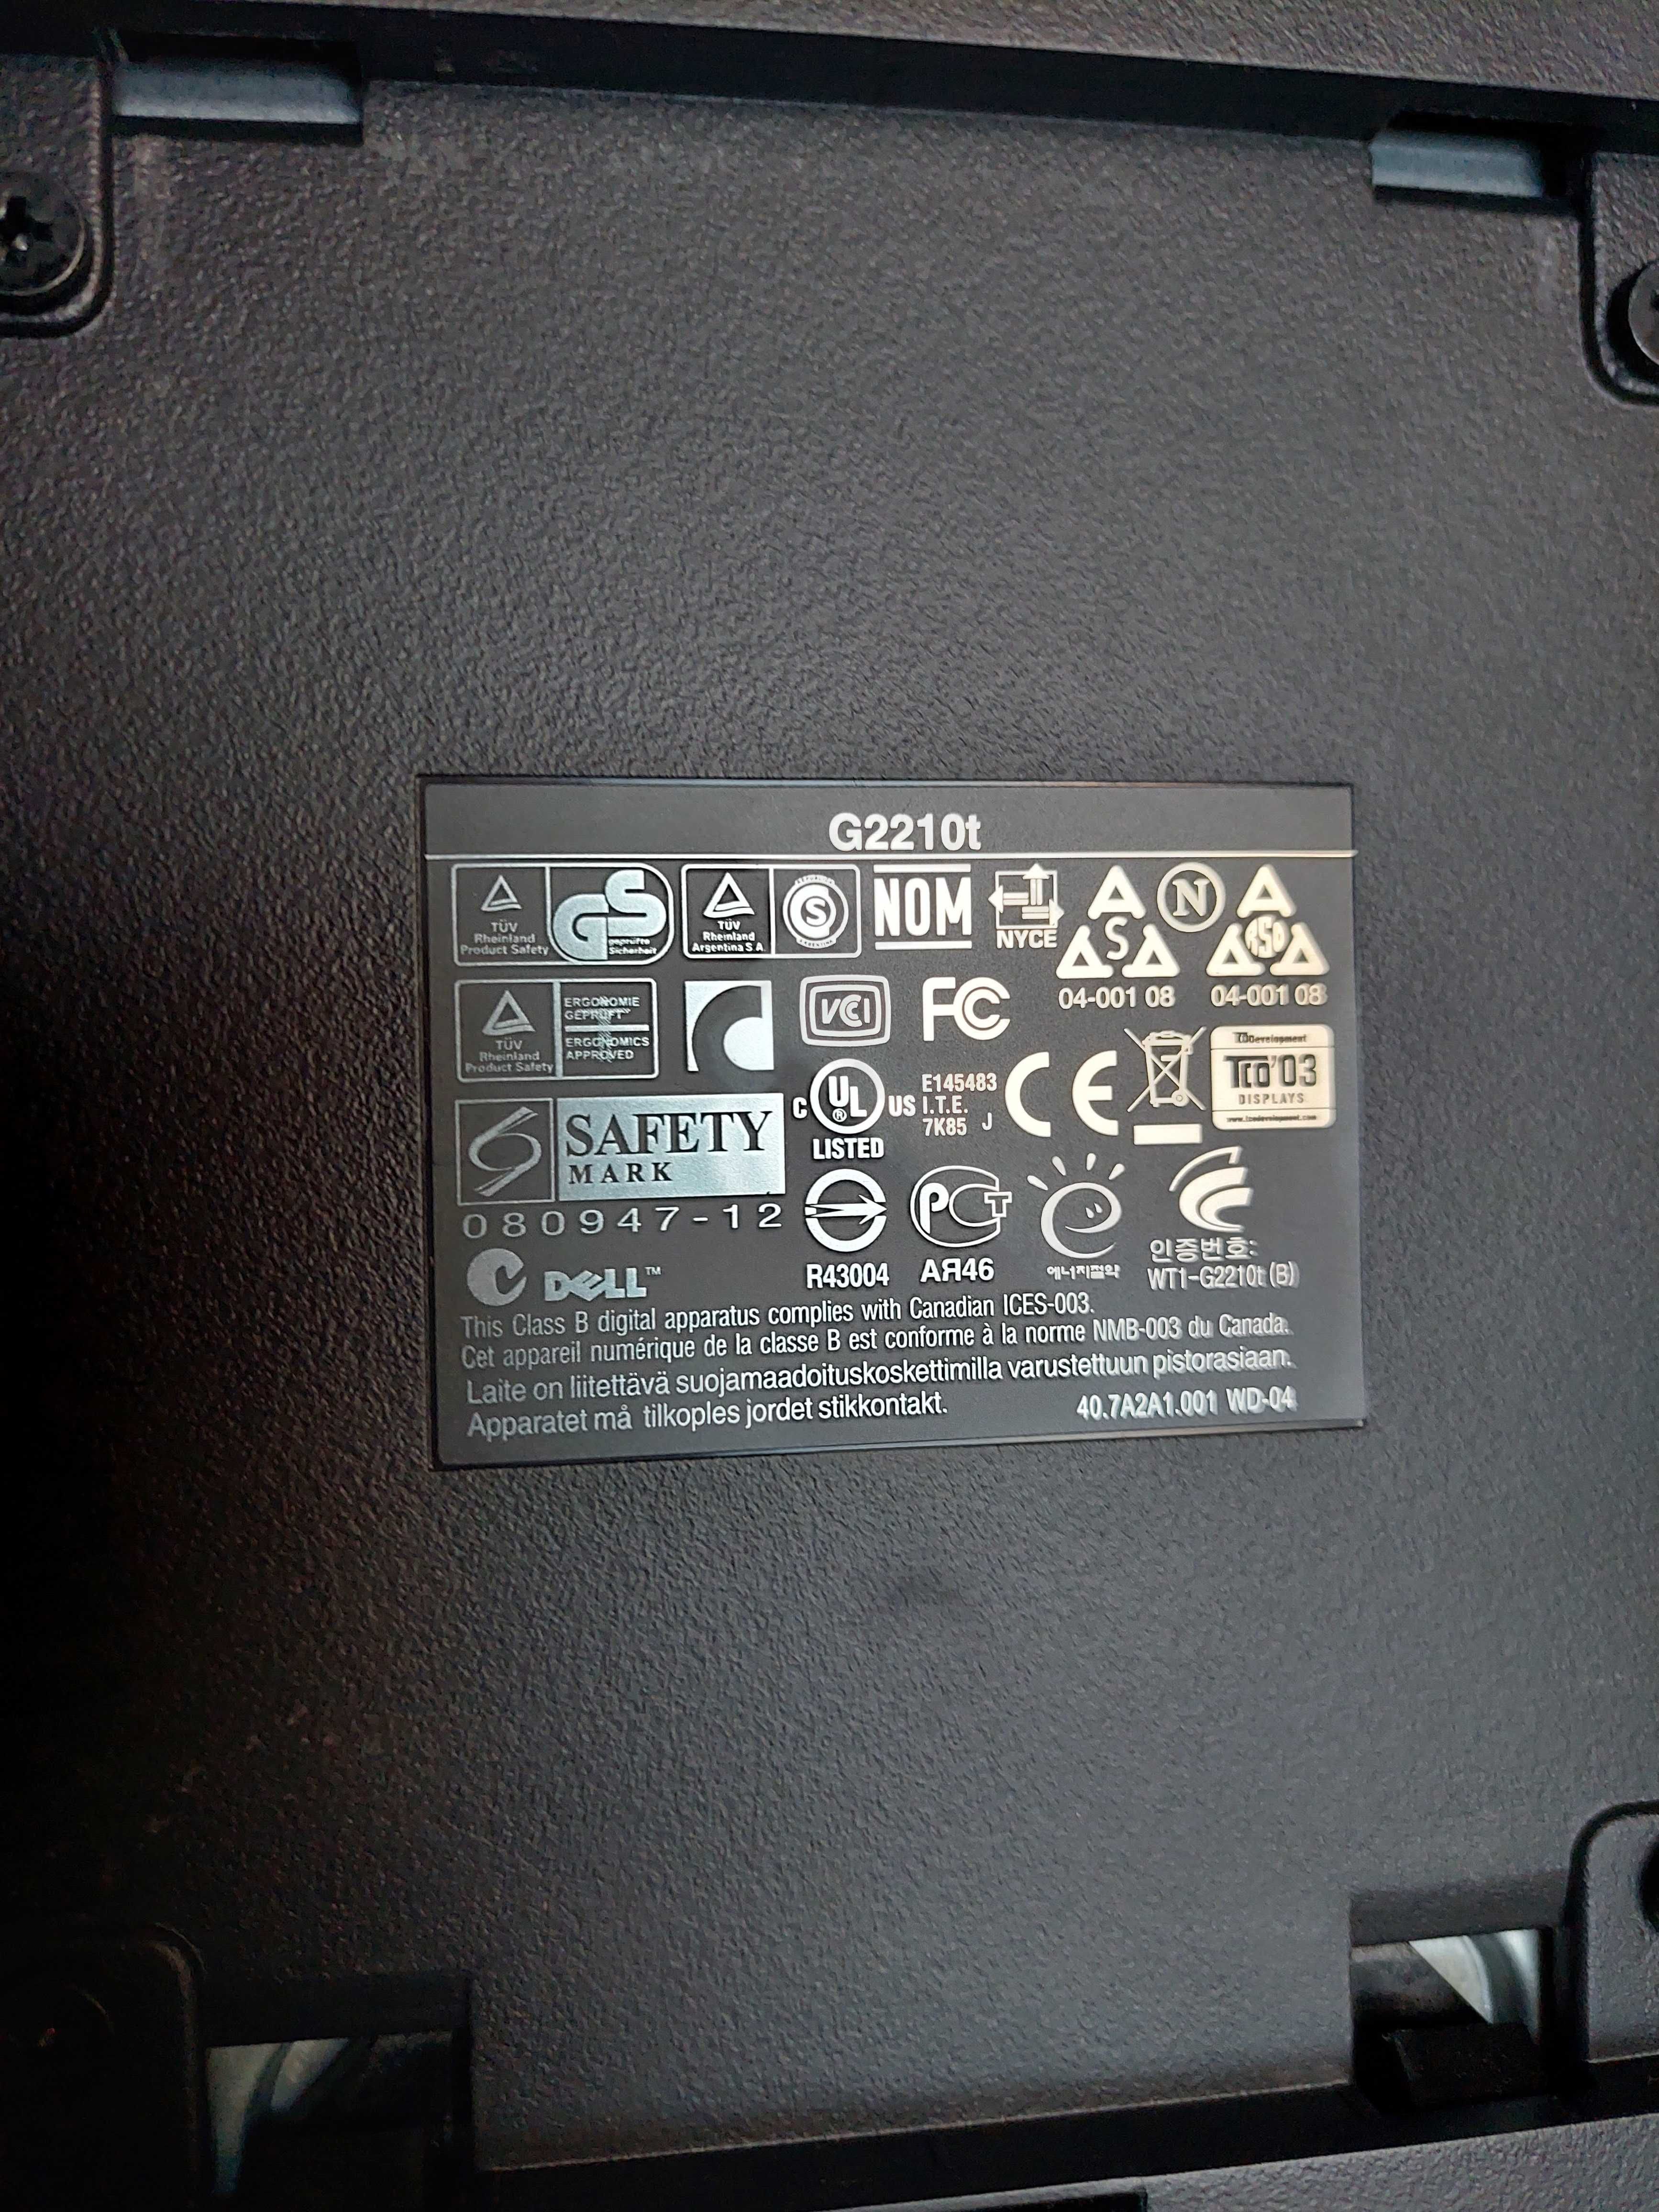 Monitor Dell G2210t 22", suport detasabil, cu cabluri